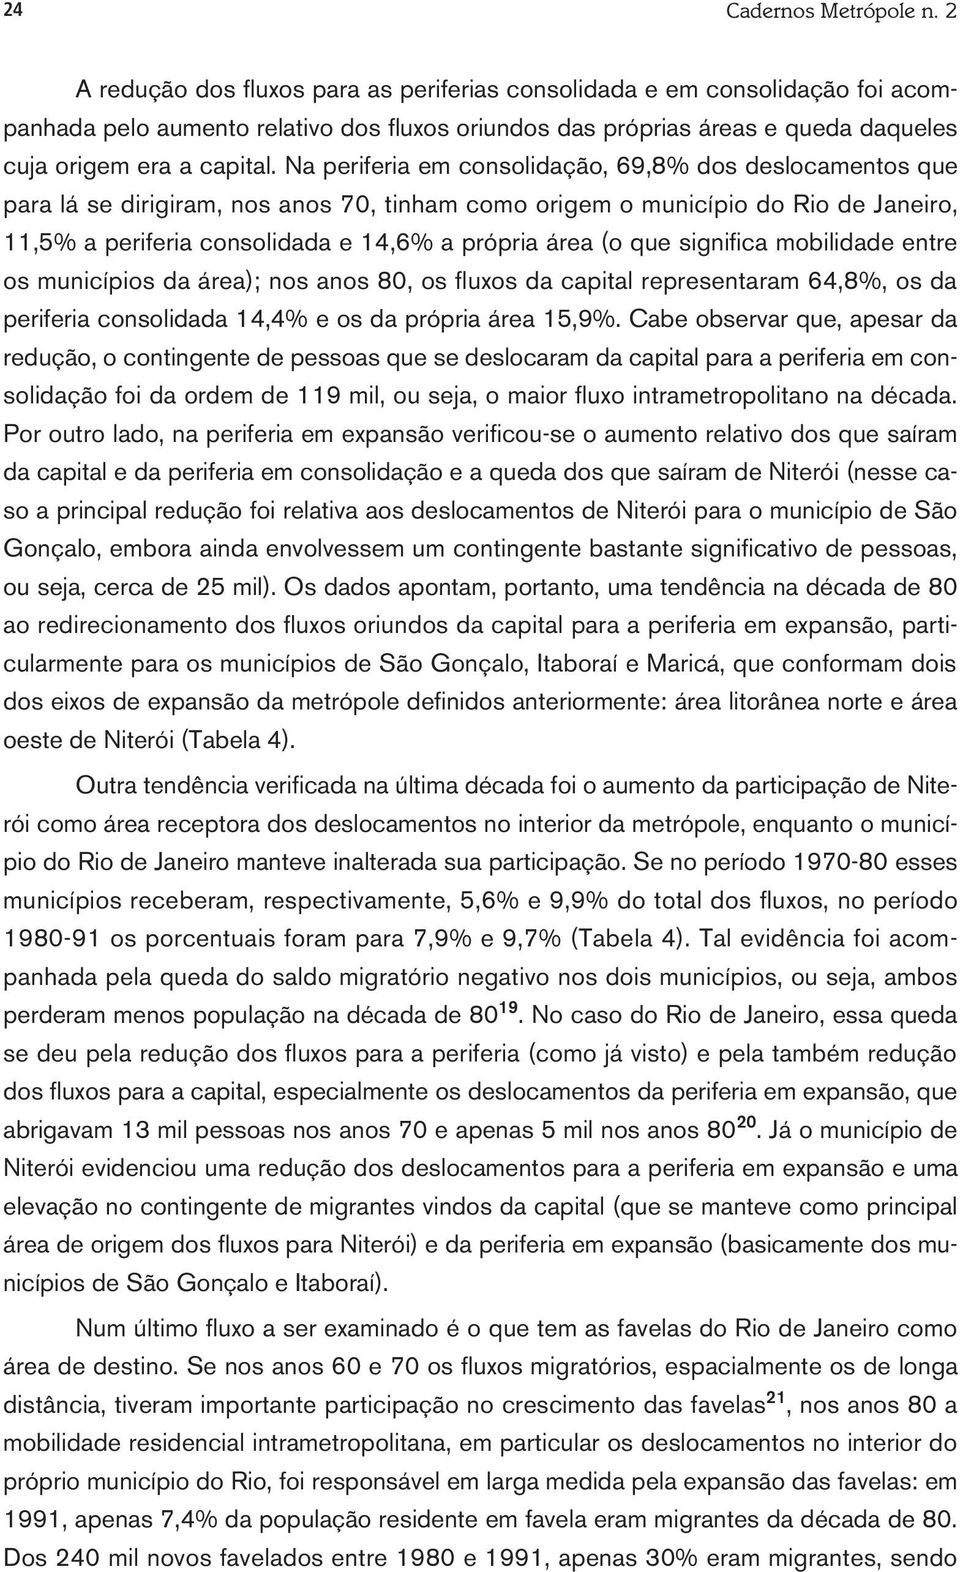 Na periferia em consolidação, 69,8% dos deslocamentos que para lá se dirigiram, nos anos 70, tinham como origem o município do Rio de Janeiro, 11,5% a periferia consolidada e 14,6% a própria área (o